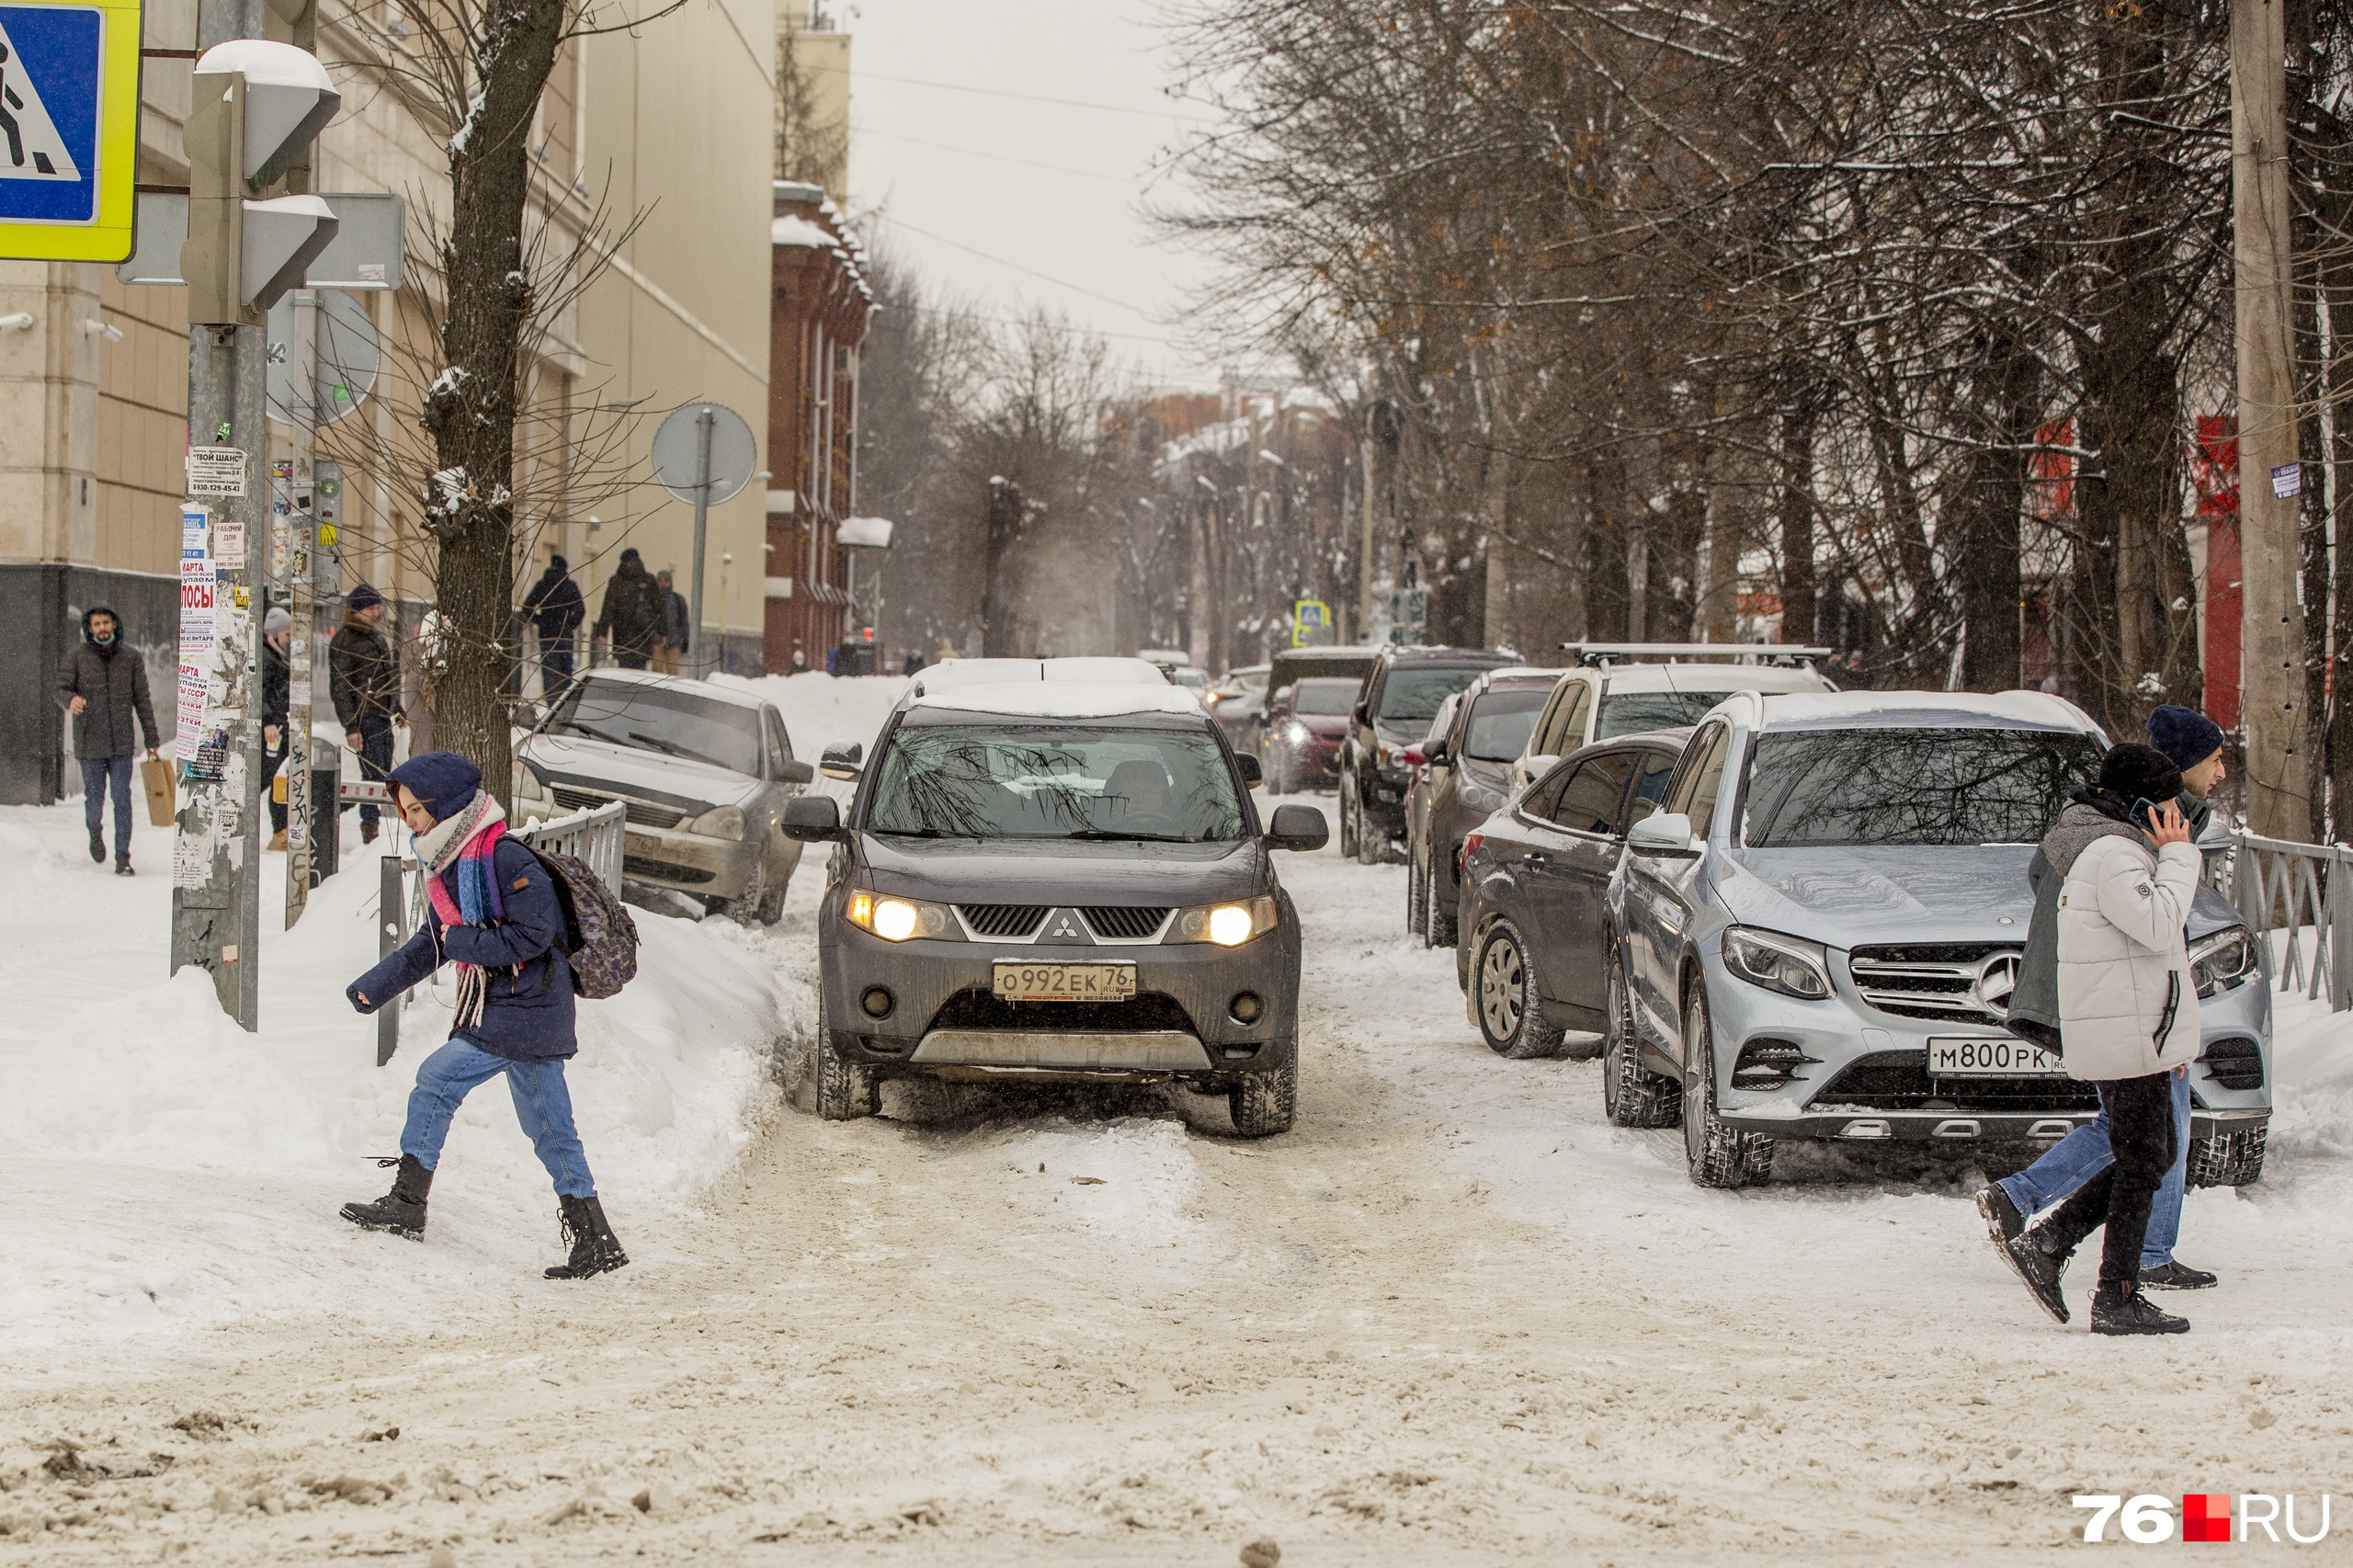 Снег обязательно пропадет с дорог — не справятся коммунальщики, так по весне сам растает